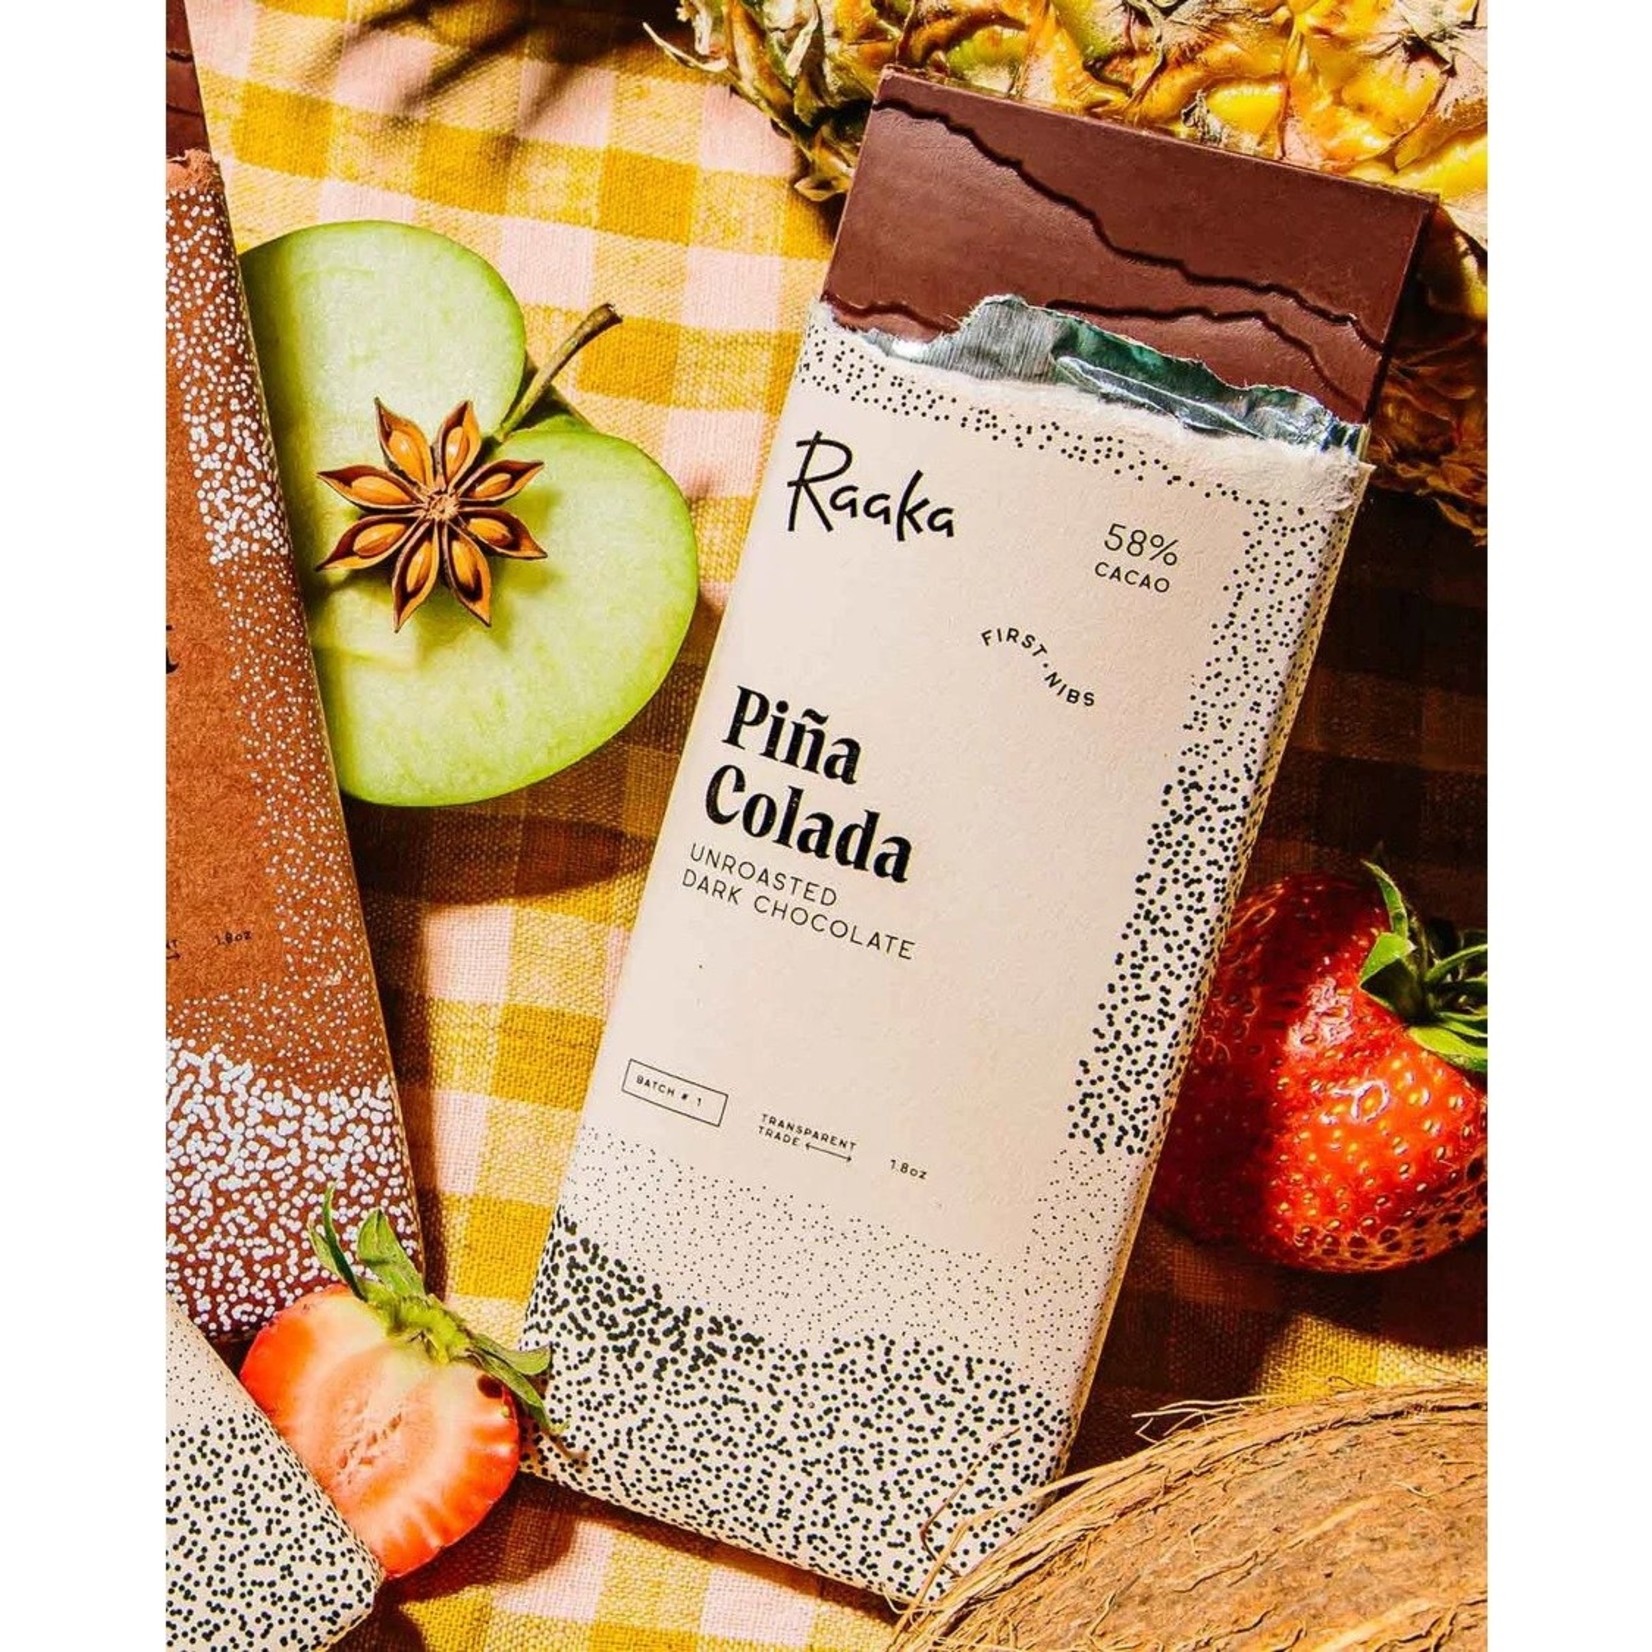 Raaka Raaka Chocolate Bar 58% Piña Colada - Limited Batch